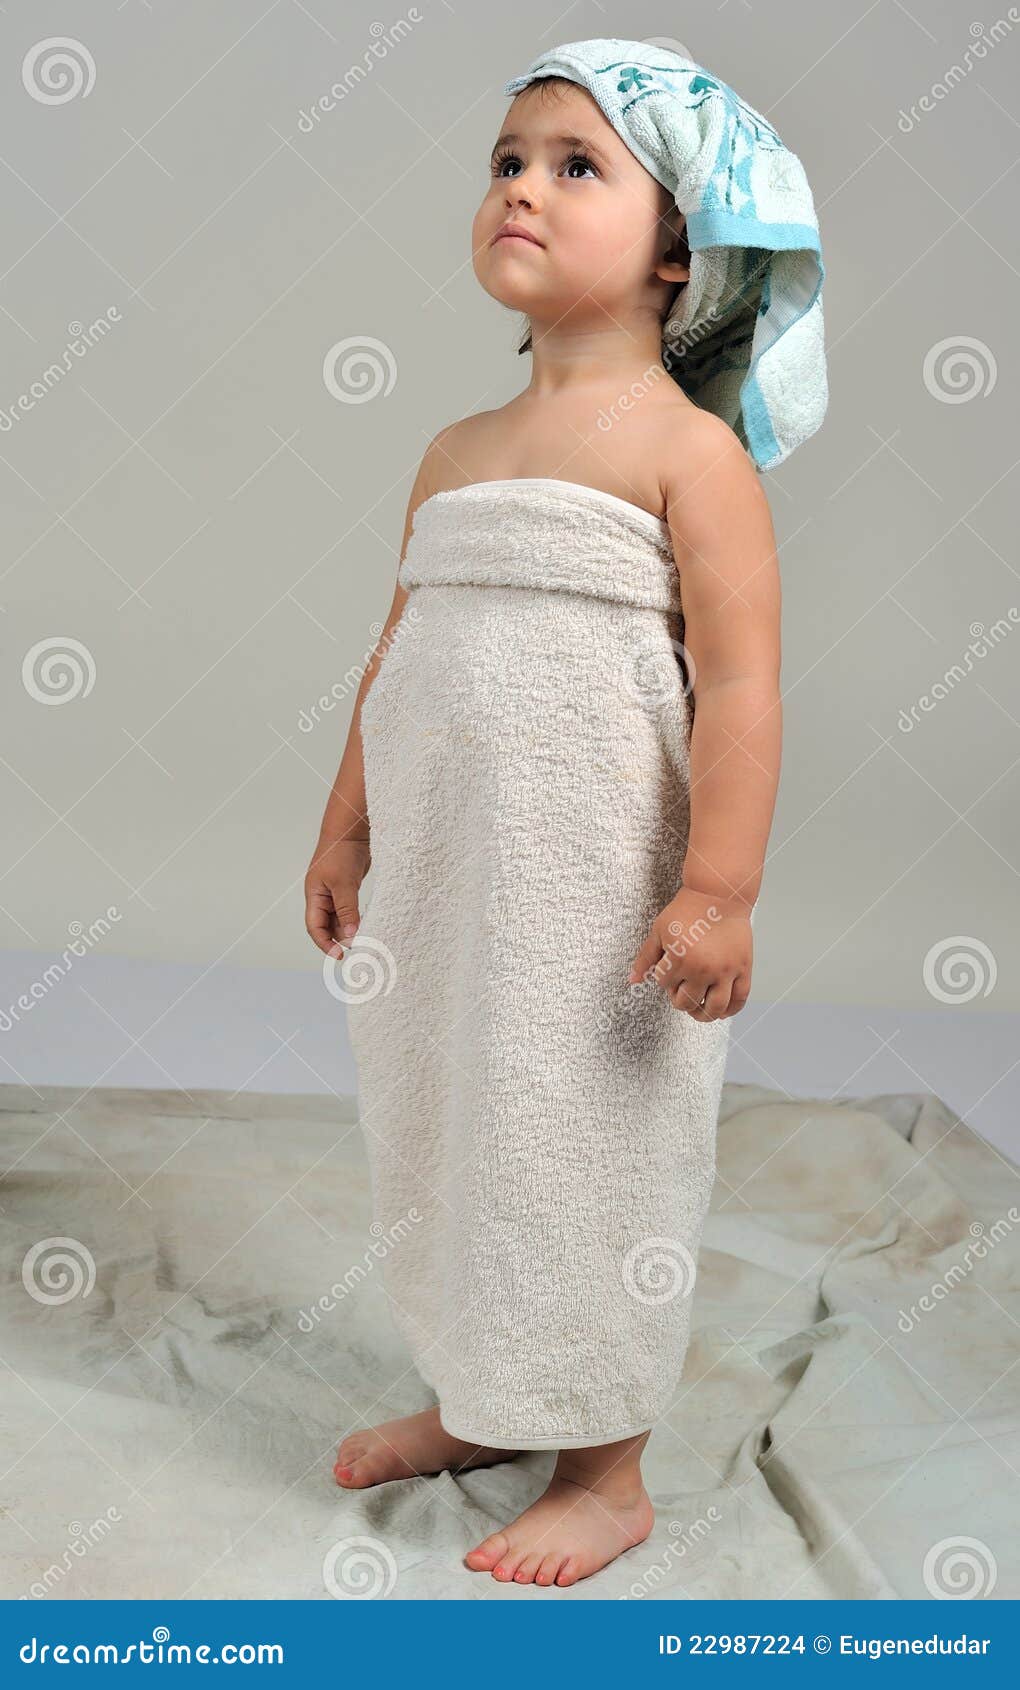 Обернутая полотенцем. Полотенце для девочек. Маленькая девочка в полотенце. Фотосессия маленьких в полотенце. Маленькая девушка в полотенце.